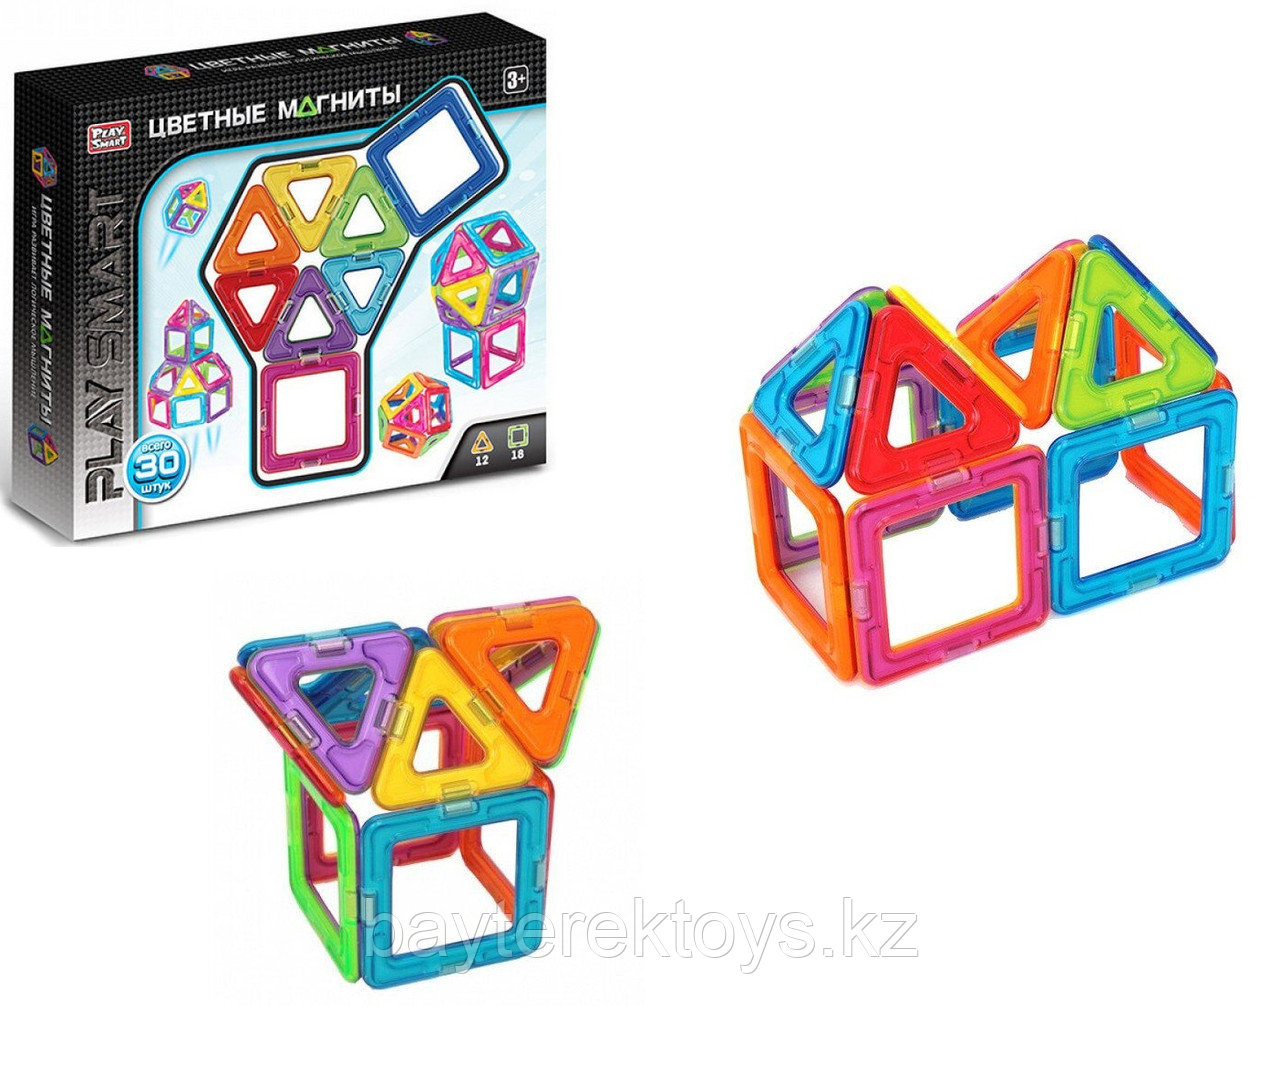 Детский магнитный Конструктор Play Smart 2724 Цветные Магниты.